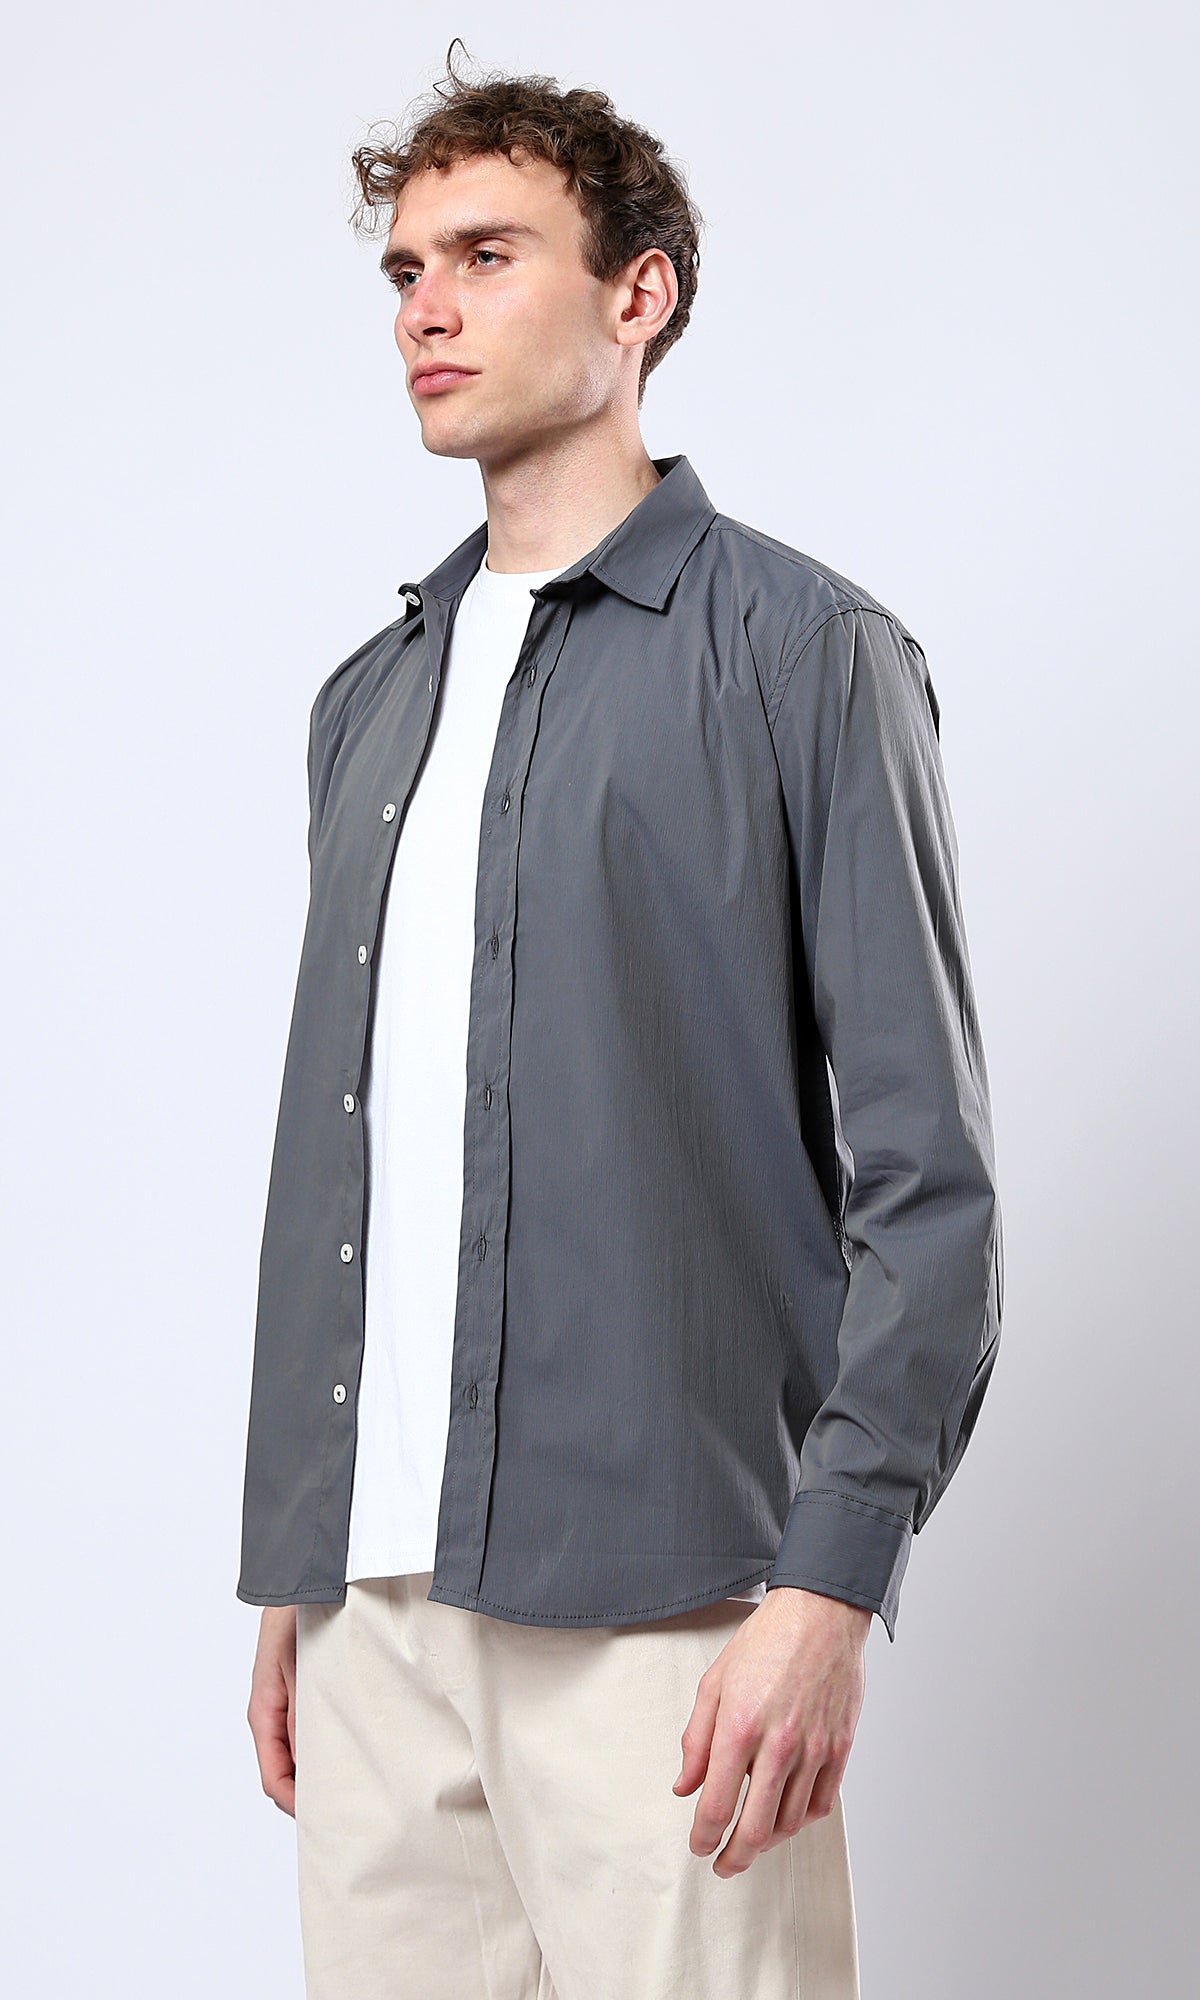 O176599 Solid Long Sleeves Dark Grey Casual Shirt